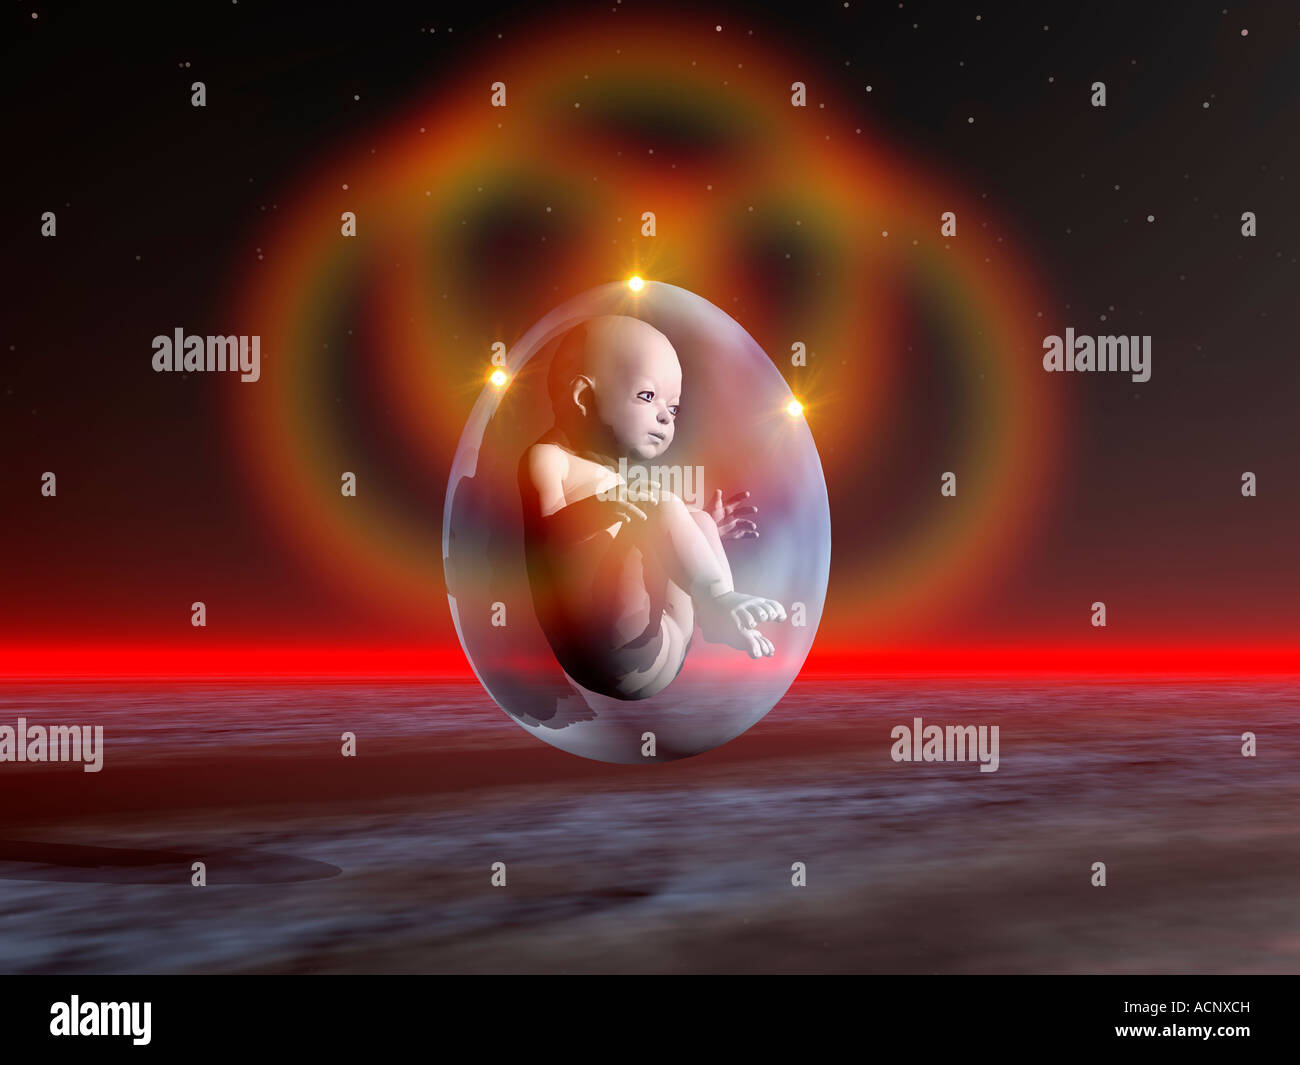 Il bambino stella immagini e fotografie stock ad alta risoluzione - Alamy